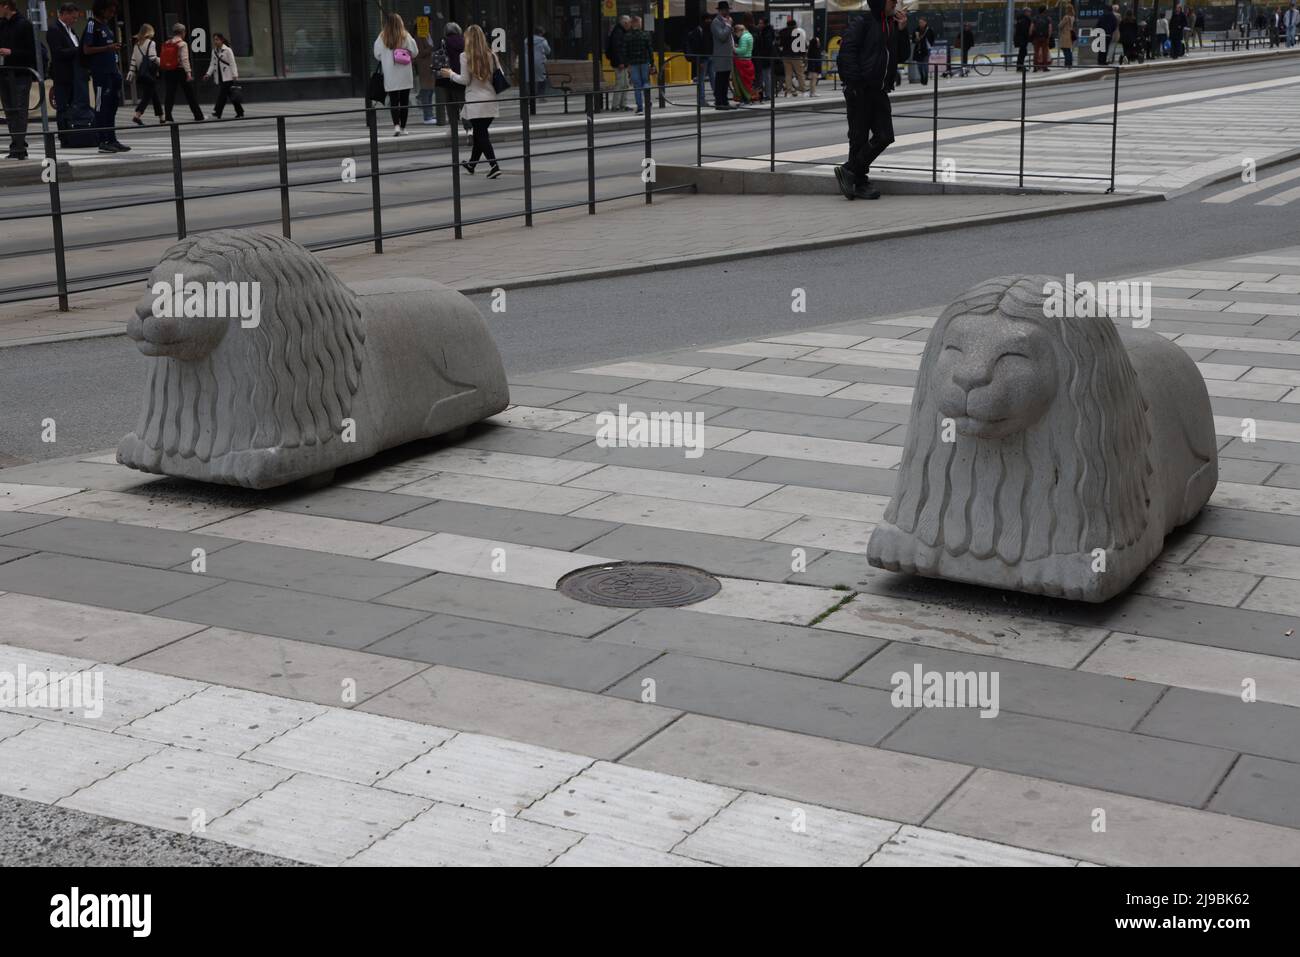 Leones de hormigón utilizados como barricadas en el centro de Estocolmo, Suecia Foto de stock